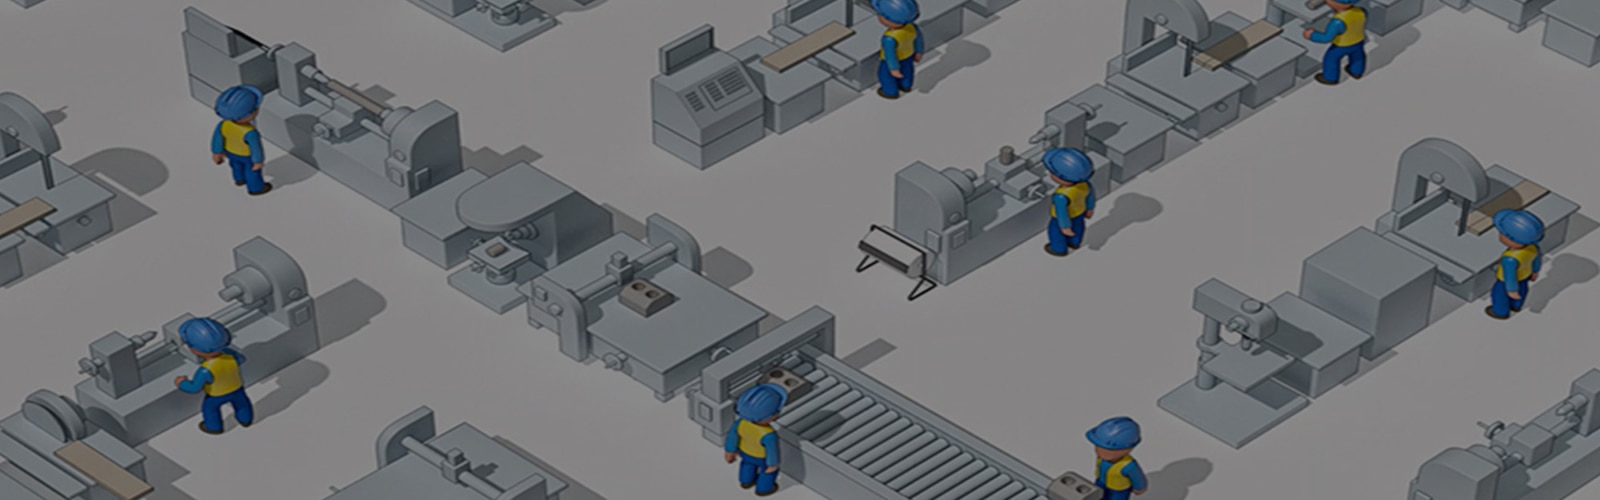 Illustrazione di operai con elmetti di sicurezza visti dall’alto di un capannone industriale. 